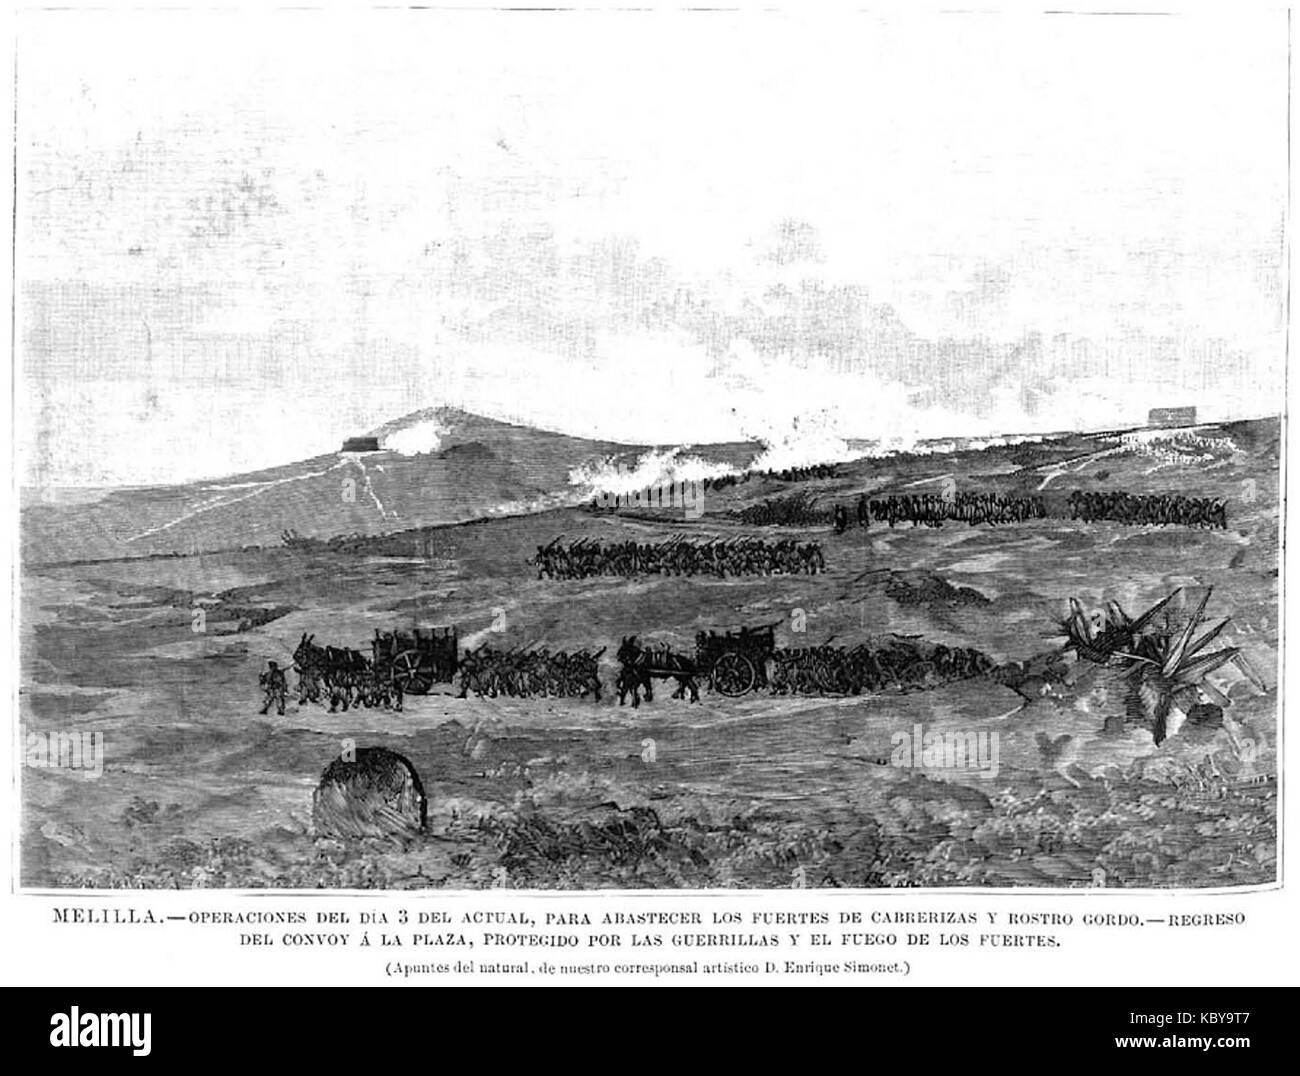 Operaciones del 3 de noviembre de 1893 para abastecer los fuertes de Cabrerizas y Rostro Gordo, regreso del convoy a la plaza, protegido por las guerrillas y el fuego de los fuertes Stock Photo